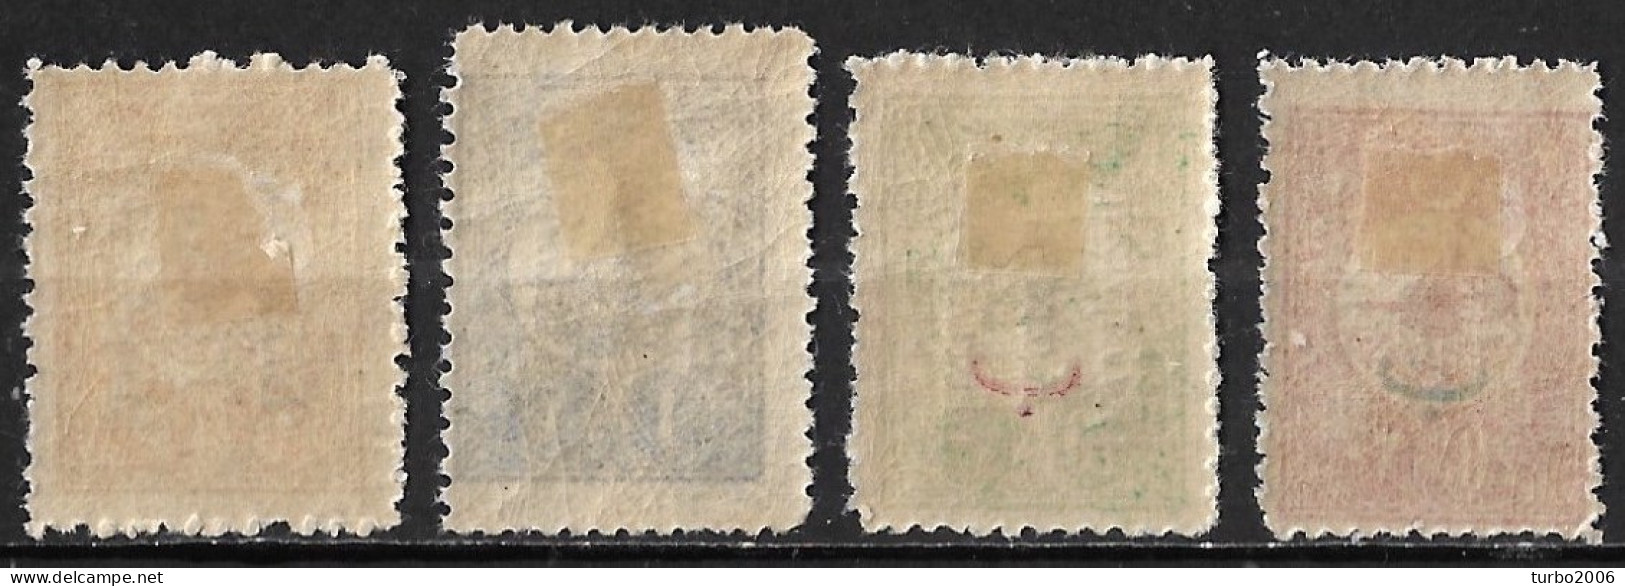 MYTILENE 1912 Overprinted Turkish Stamps 4 Values Vl.  2-5-10-11 MH - Mytilene